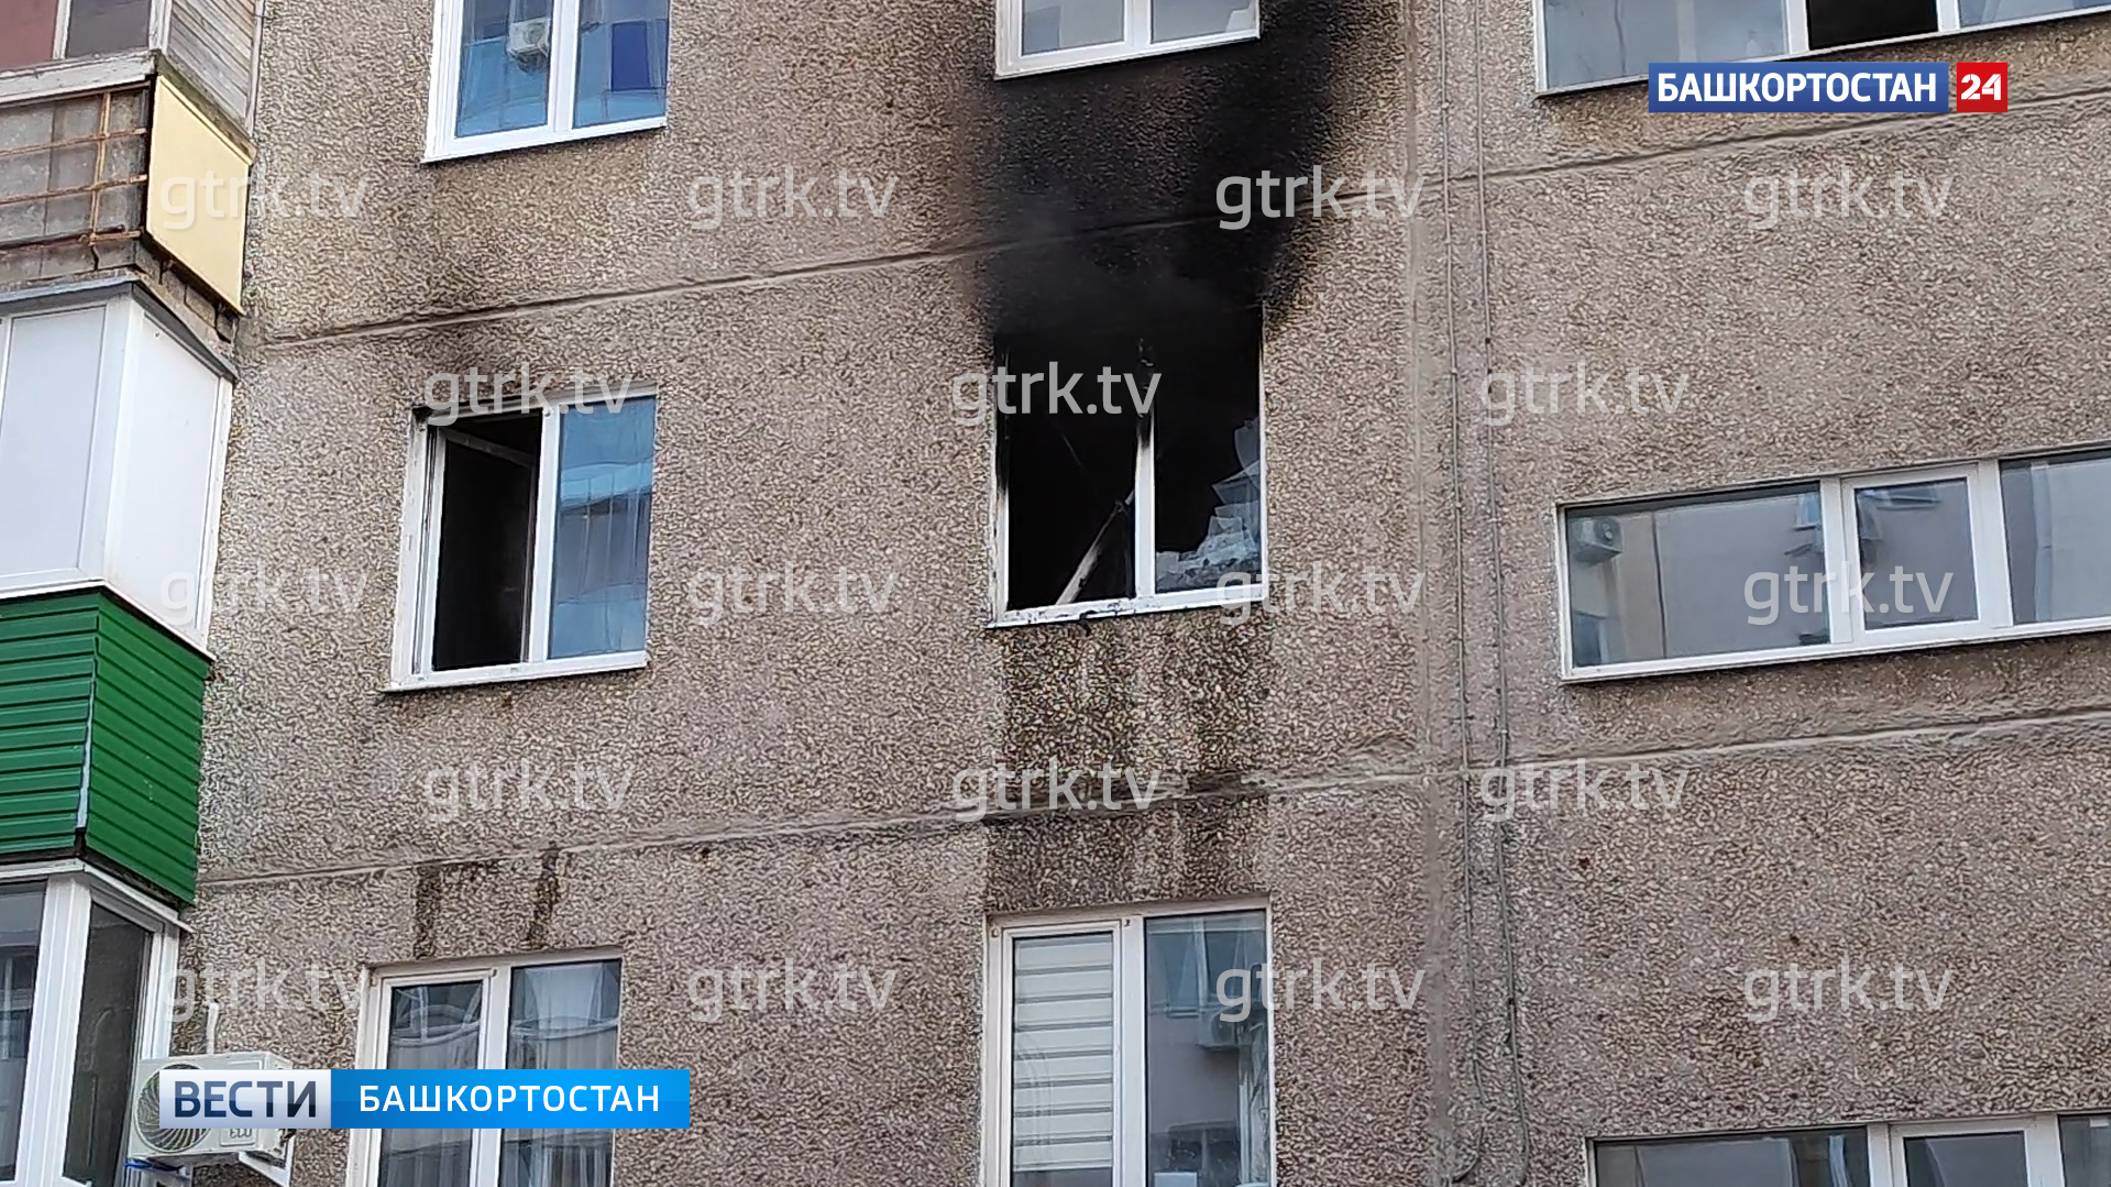 Мужчина пострадал при пожаре в квартире на улице Пушкина в Уфе: эвакуировали 70 человек